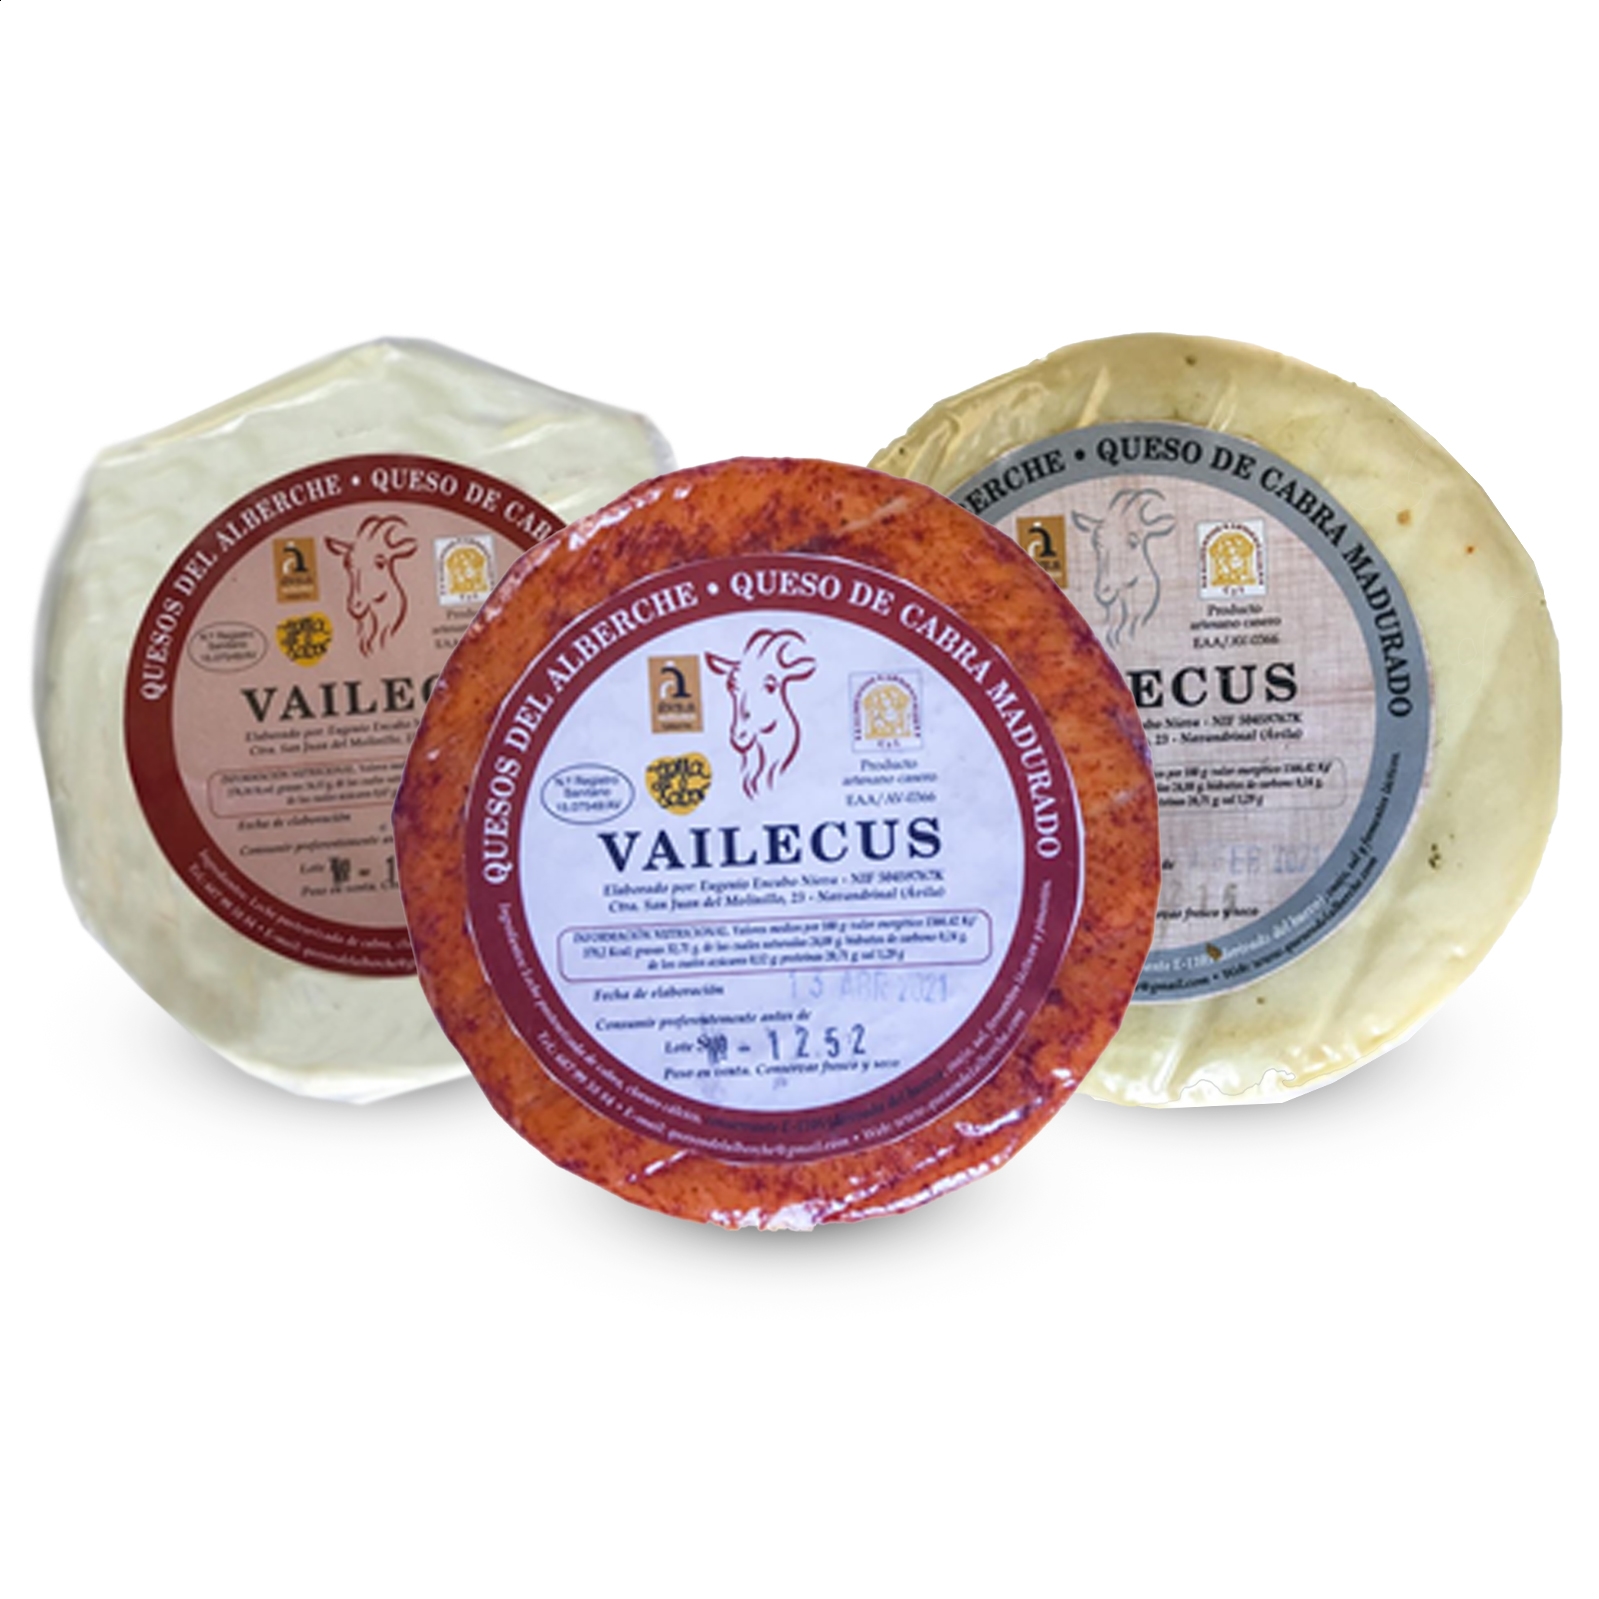 Vailecus - Lote variado quesos de cabra de leche pasteurizada 500g, 3uds